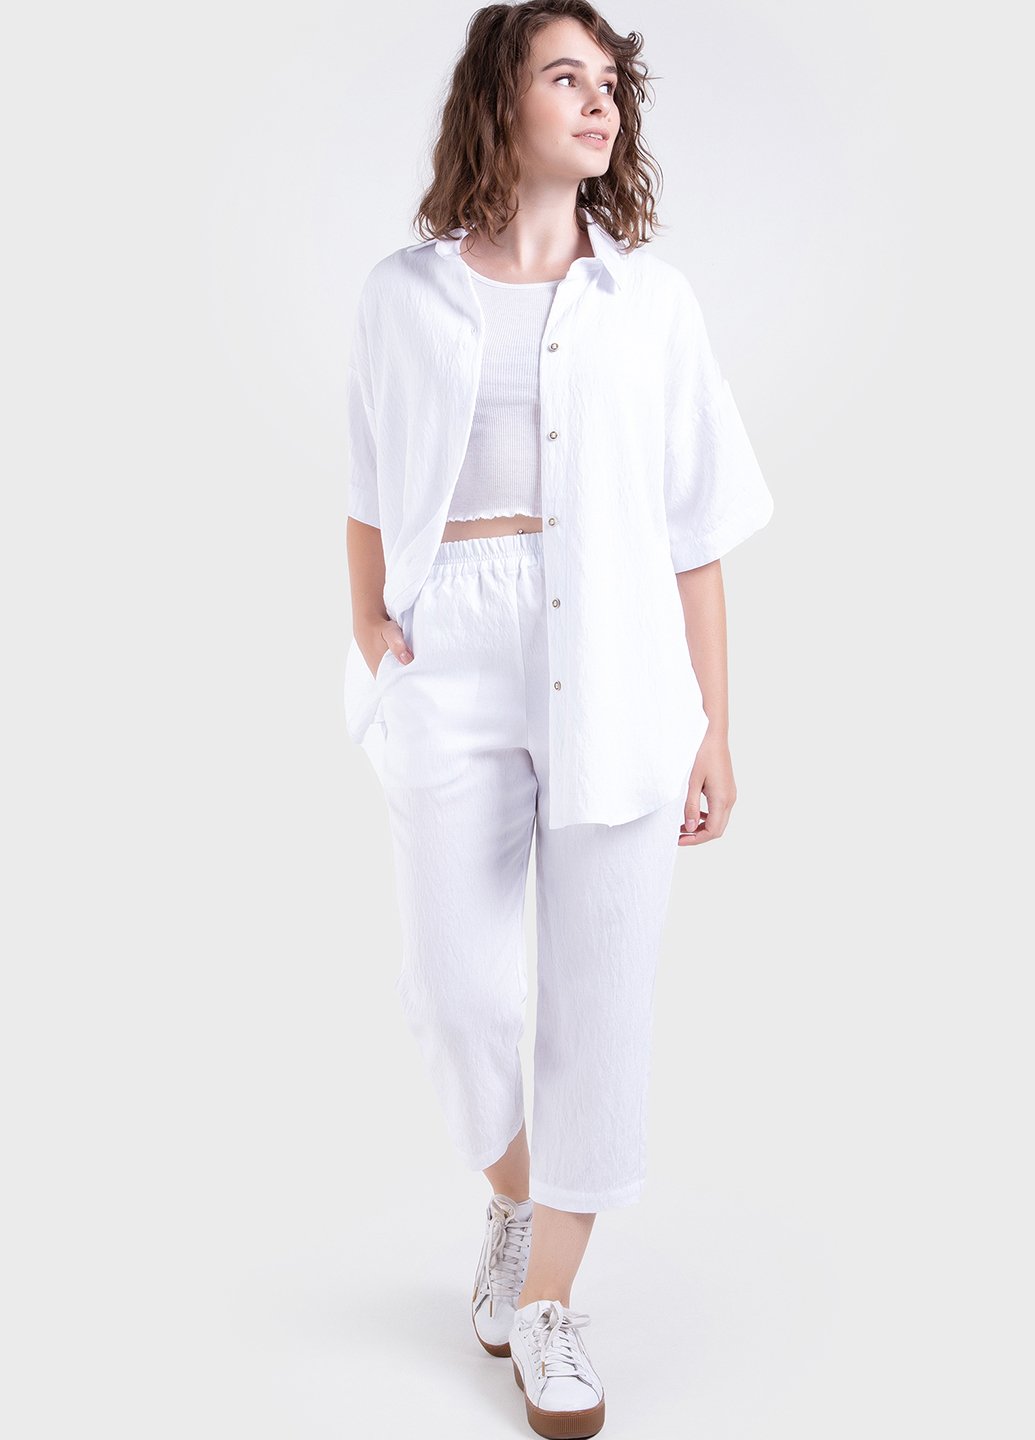 Купить Летний костюм женский двойка белого цвета: брюки, рубашка Merlini Авиано 100000152, размер 42-44 в интернет-магазине